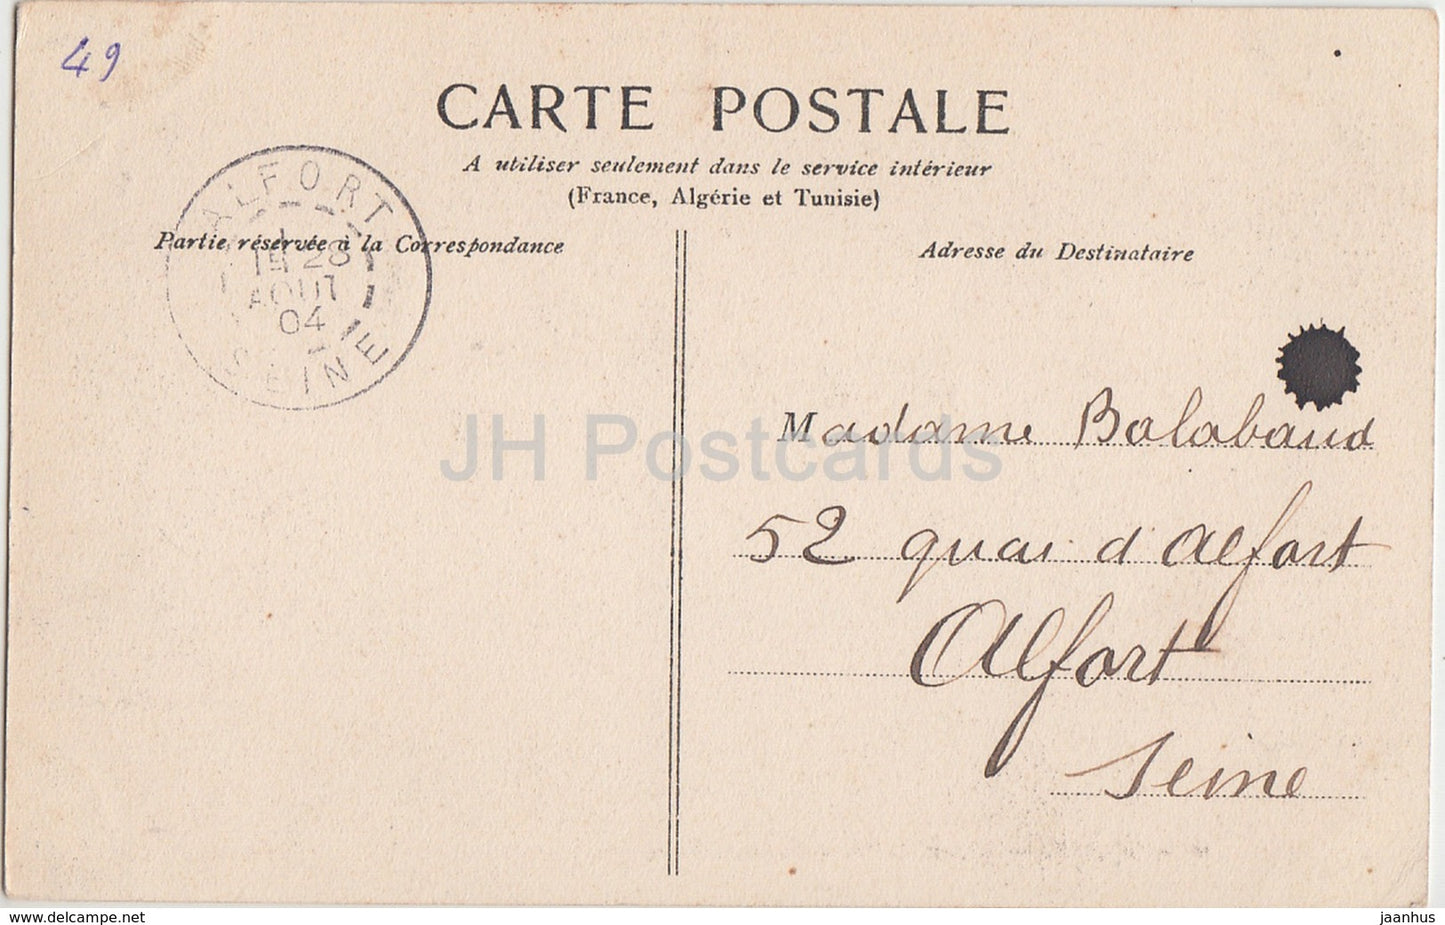 Angers - Le Pont de Ce - Ancien Chateau - castle - 11 - 1904 - old postcard - France - used